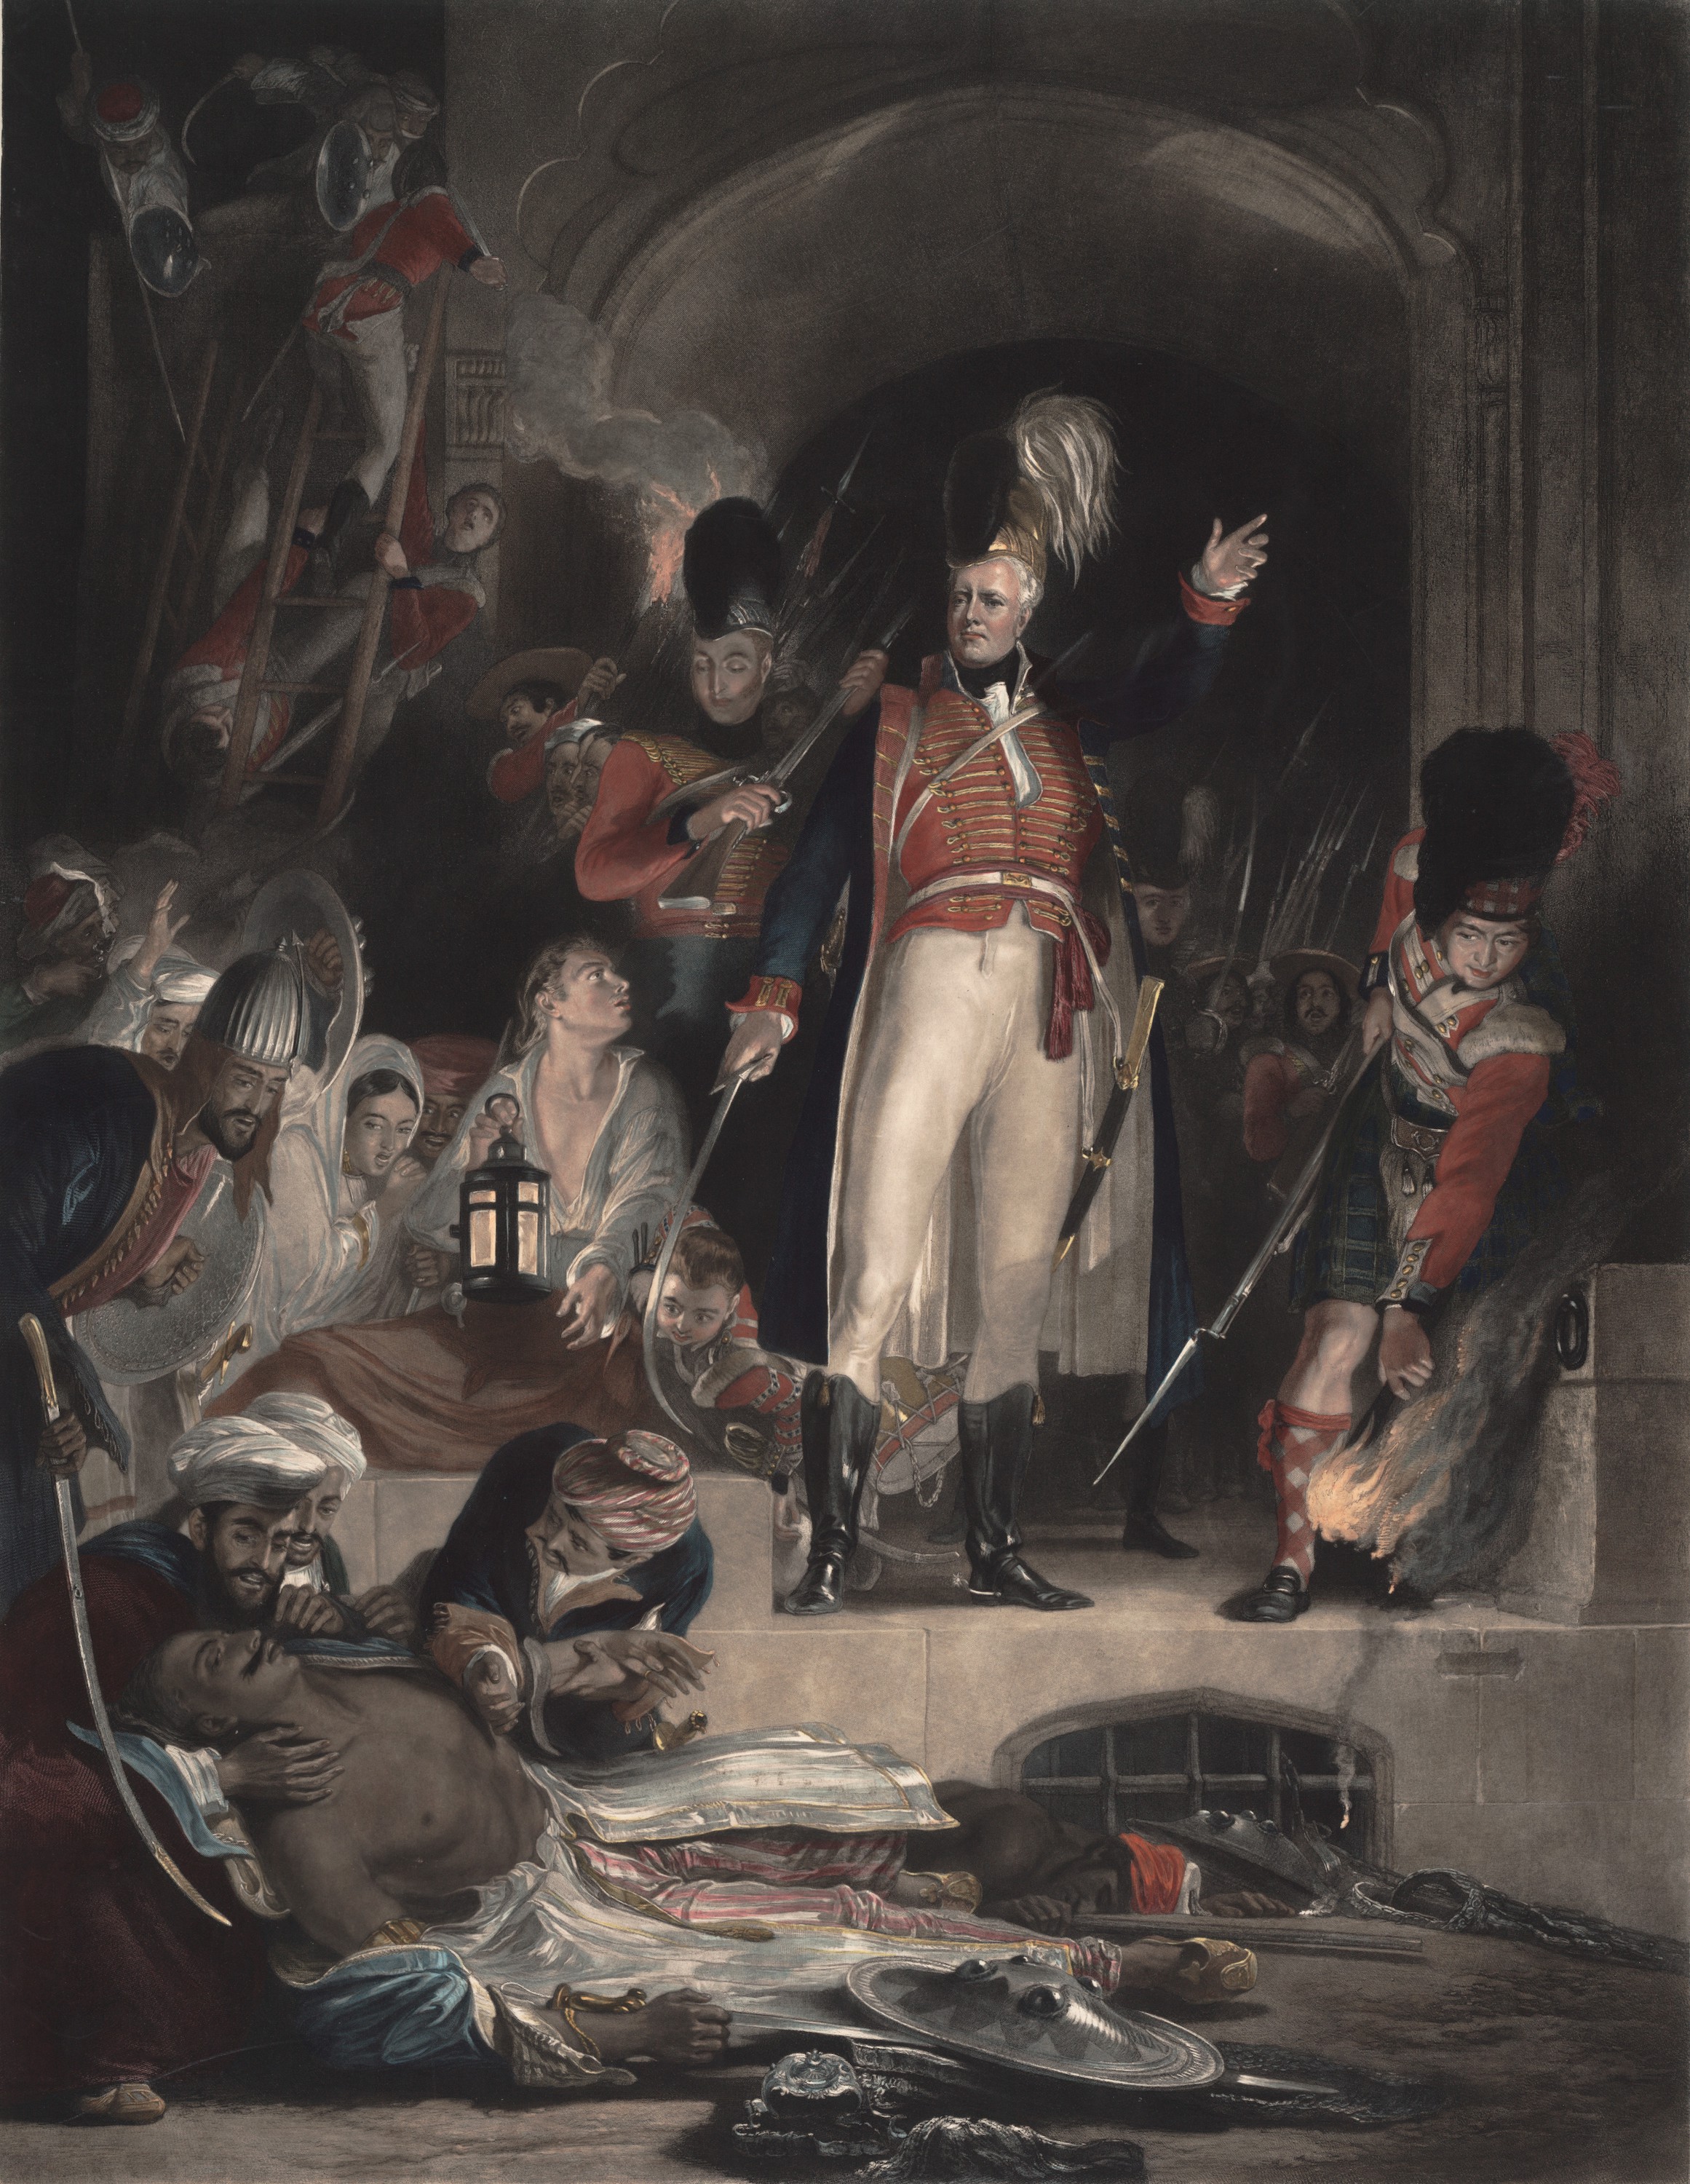 大衛·貝爾德將軍在1799年5月4日占領斯赫里朗格阿帕特塔納之後發現了蒂普蘇丹的屍體 by Sir David Wilkie - 1830左右 - 348.5 x 267.9 cm 